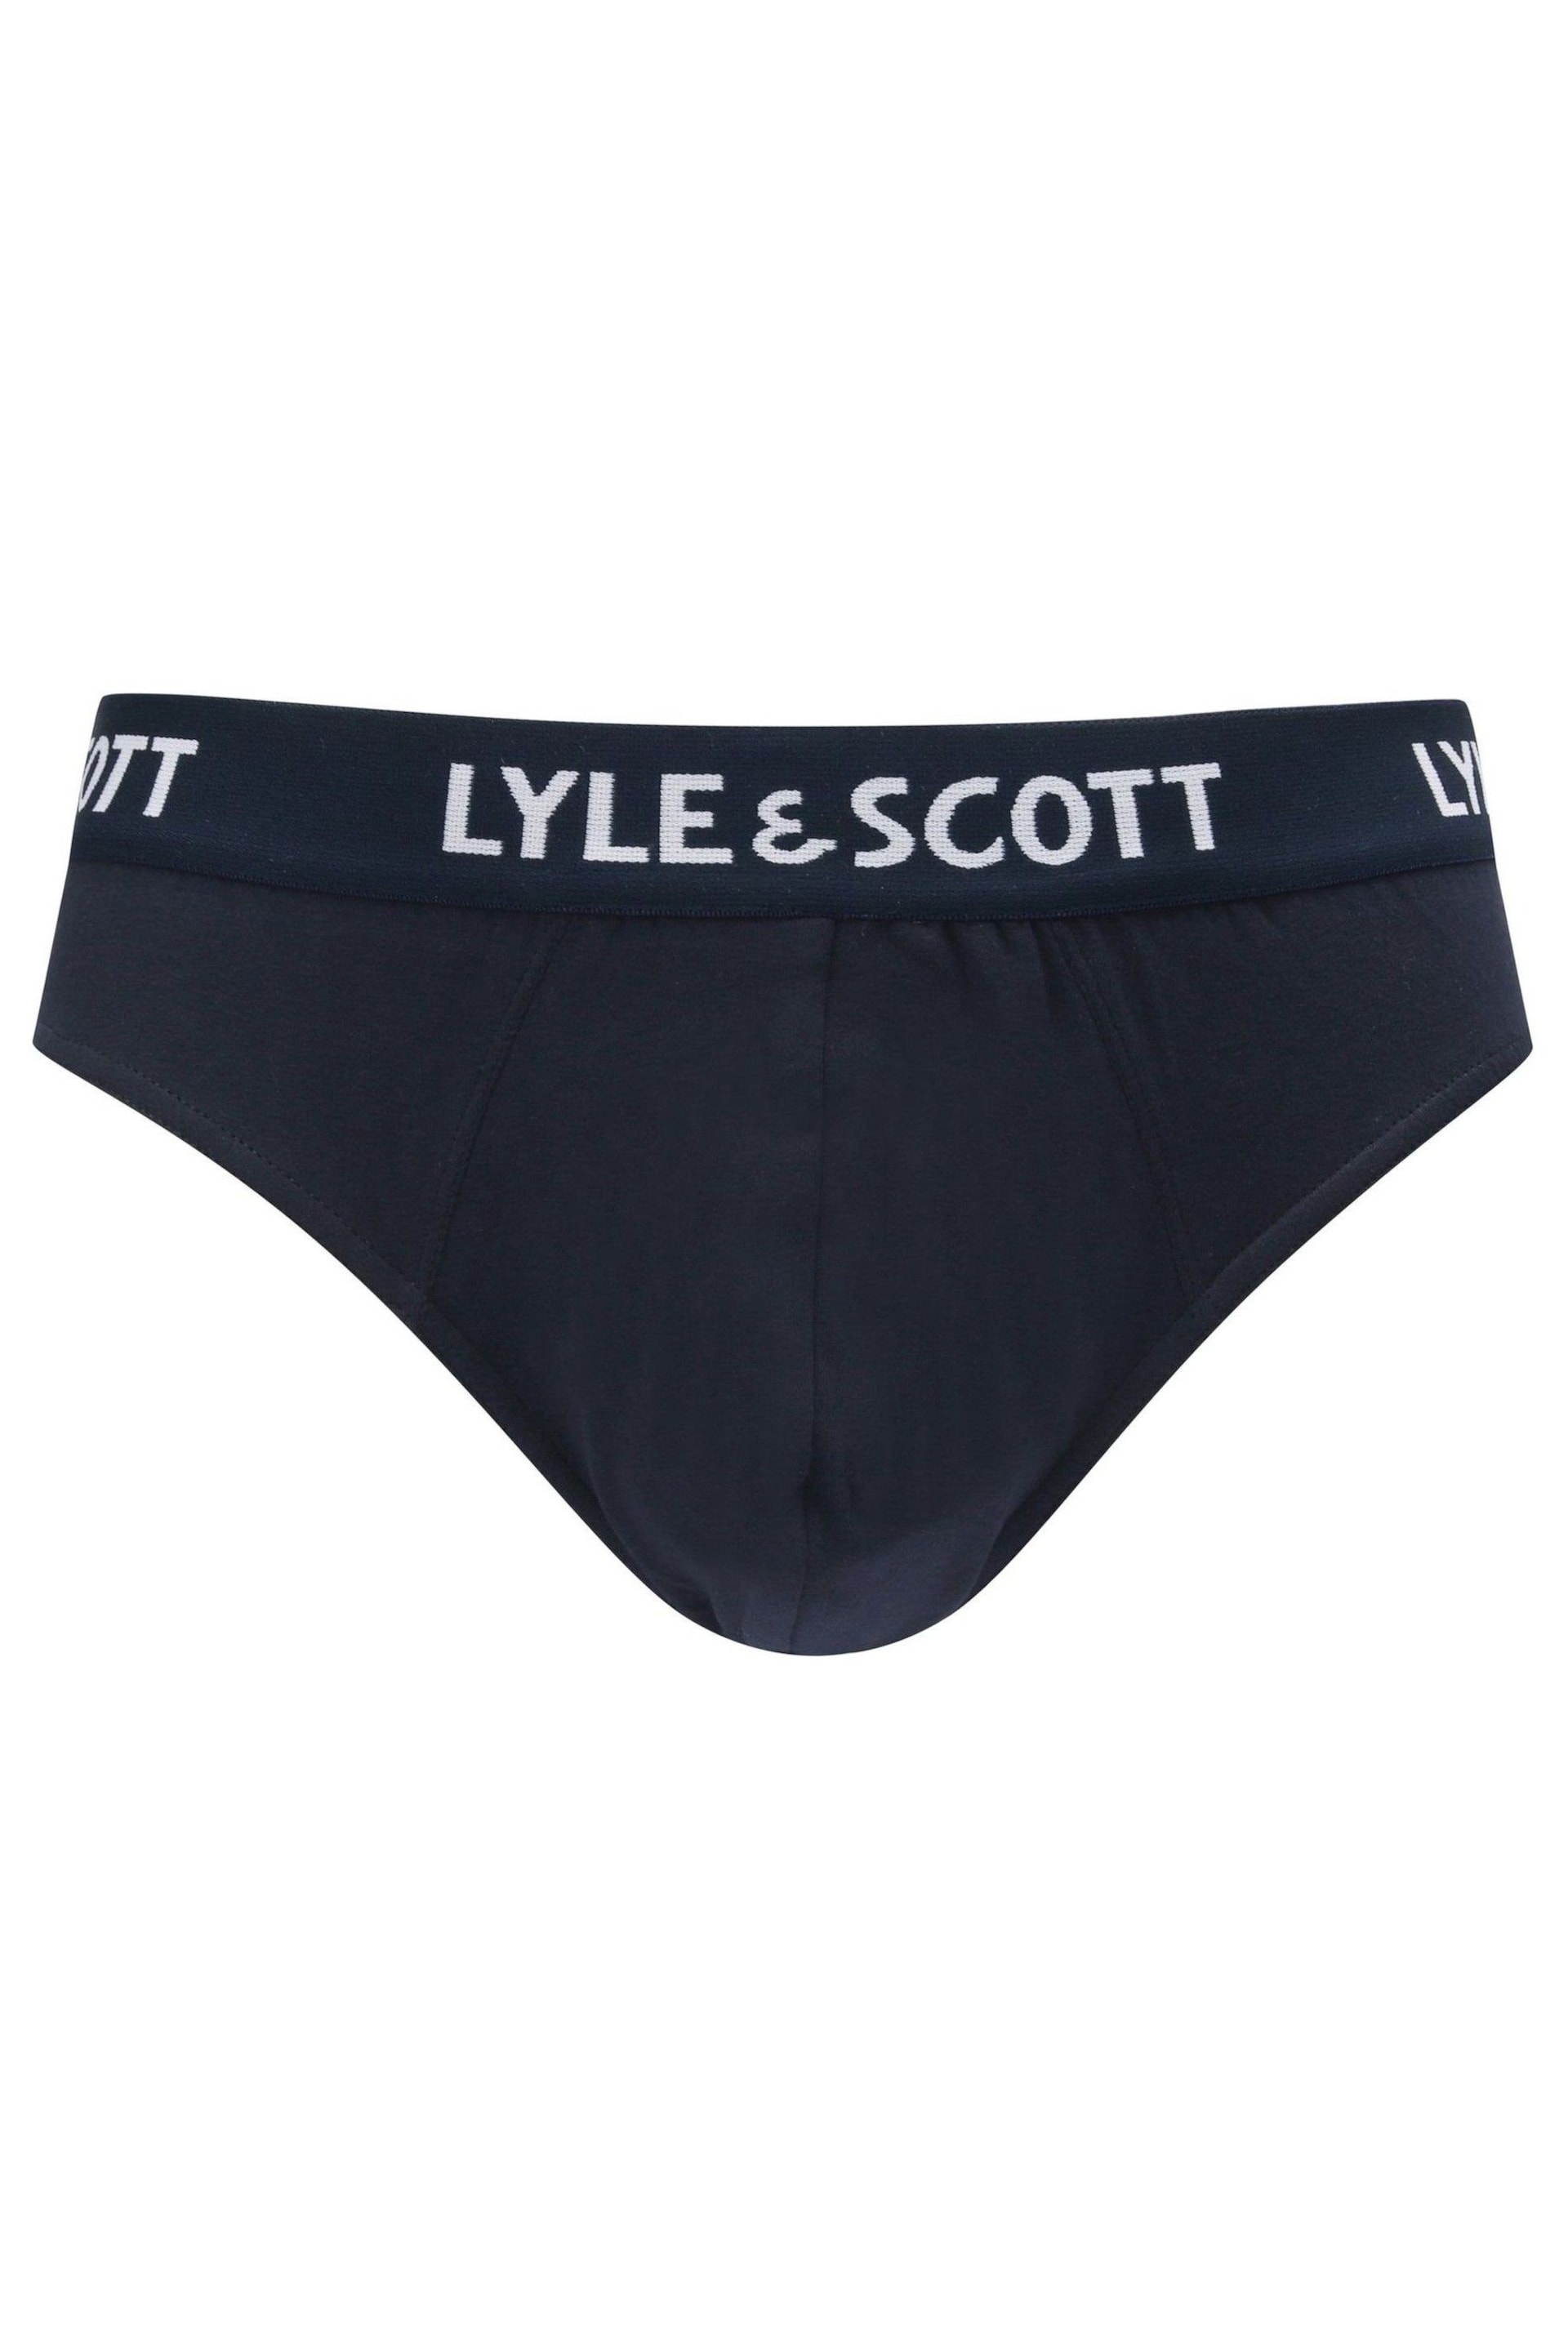 Lyle & Scott Underwear Briefs 3 Pack - Image 4 of 5